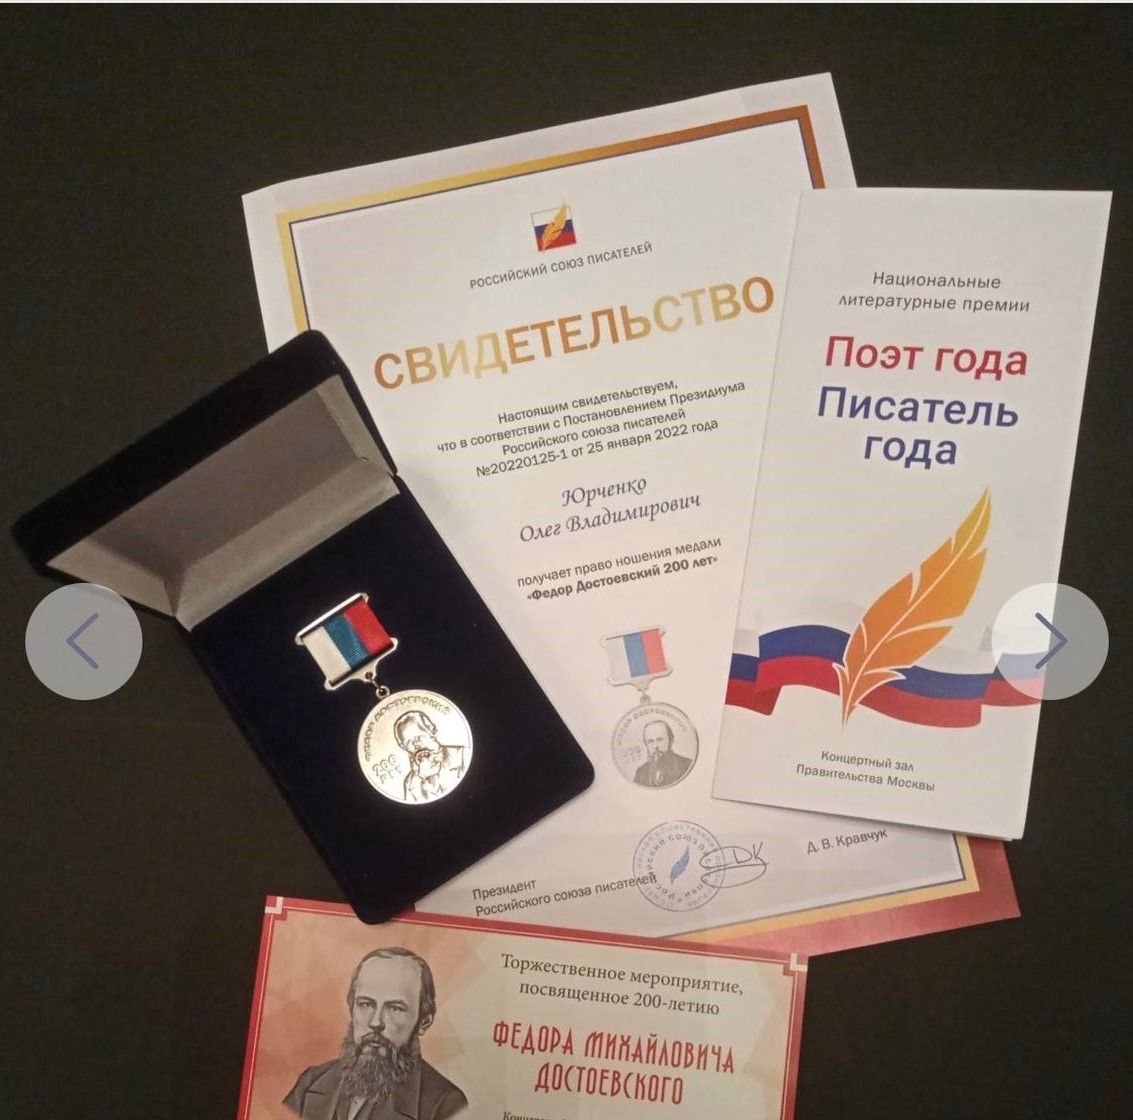 Медаль Достоевского получил учитель технологии из Предгорного округа за свой рассказ. Фото: администрация Предгорного округа